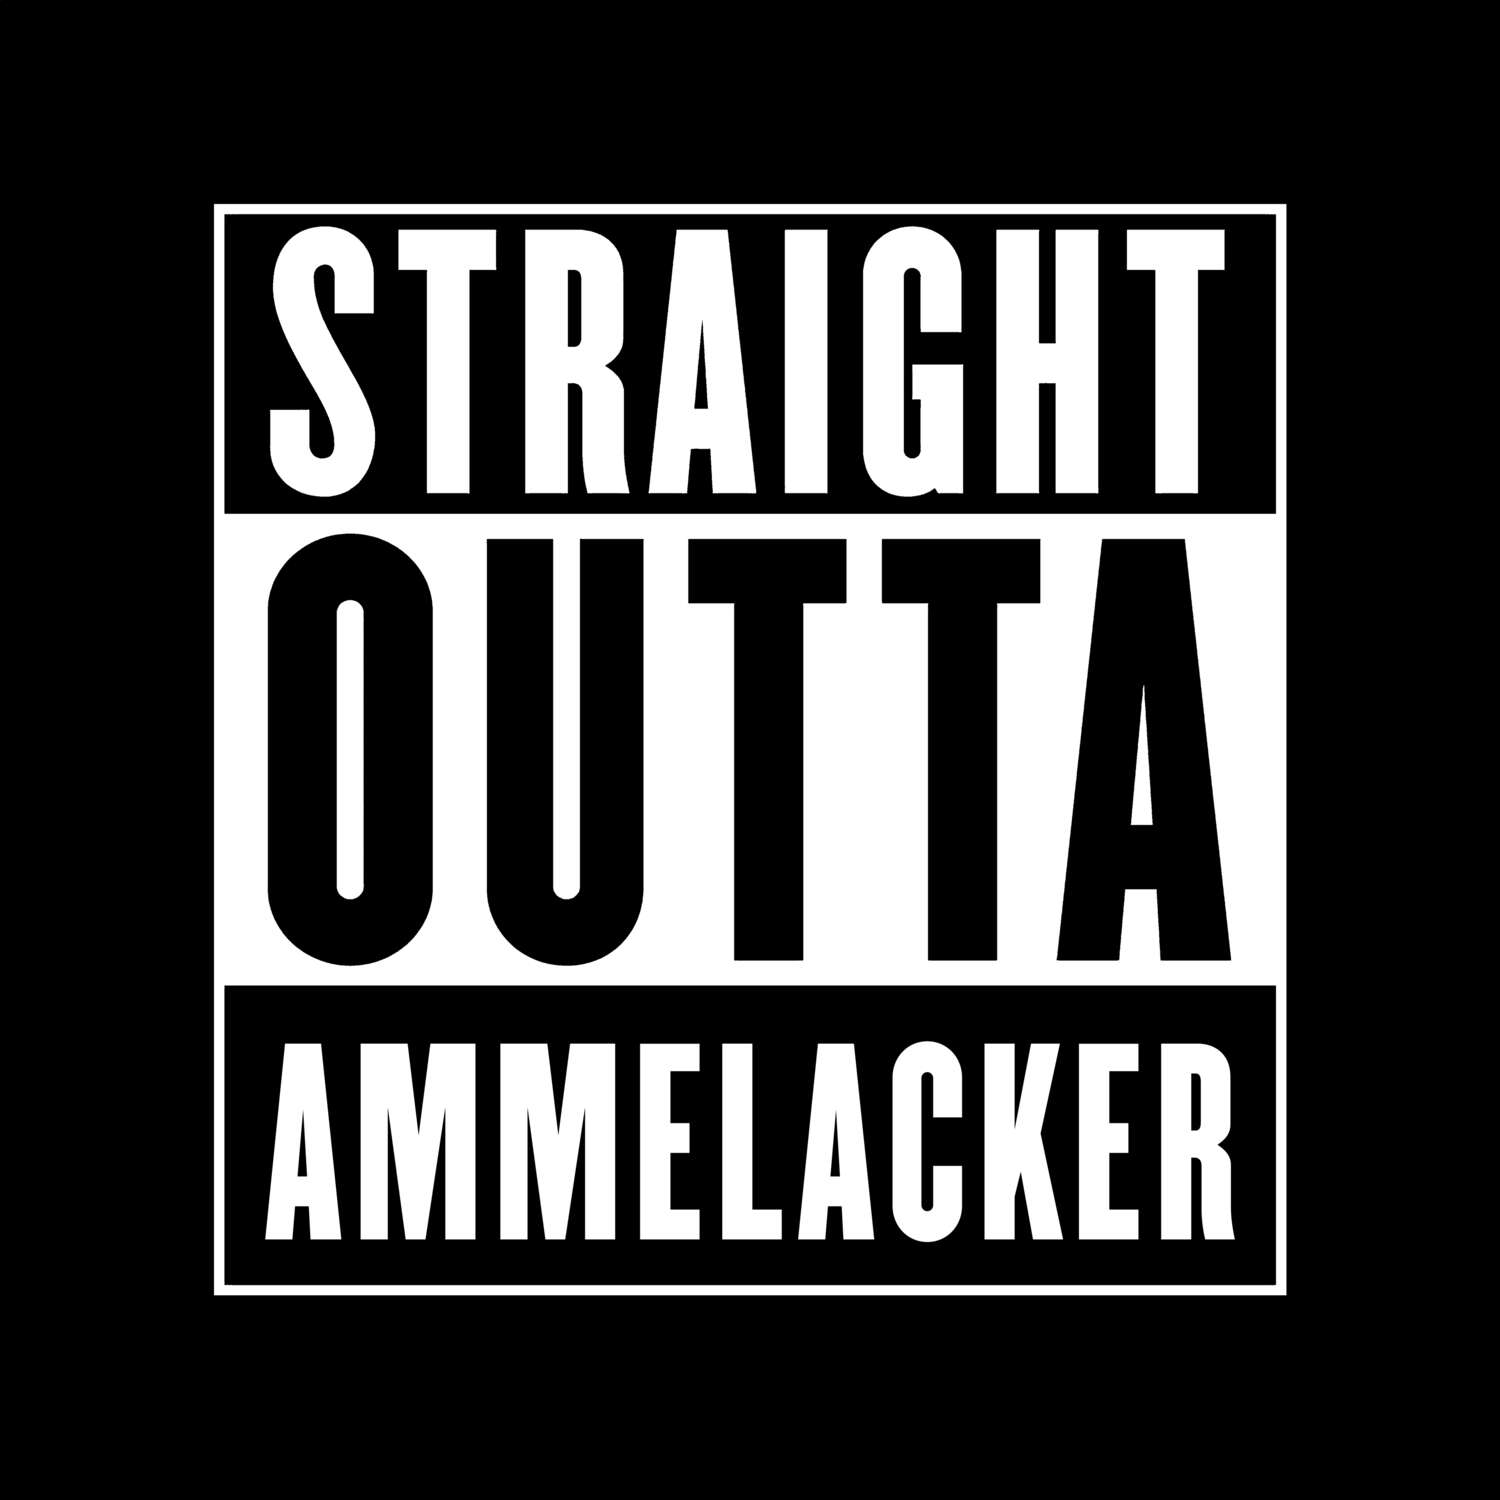 Ammelacker T-Shirt »Straight Outta«